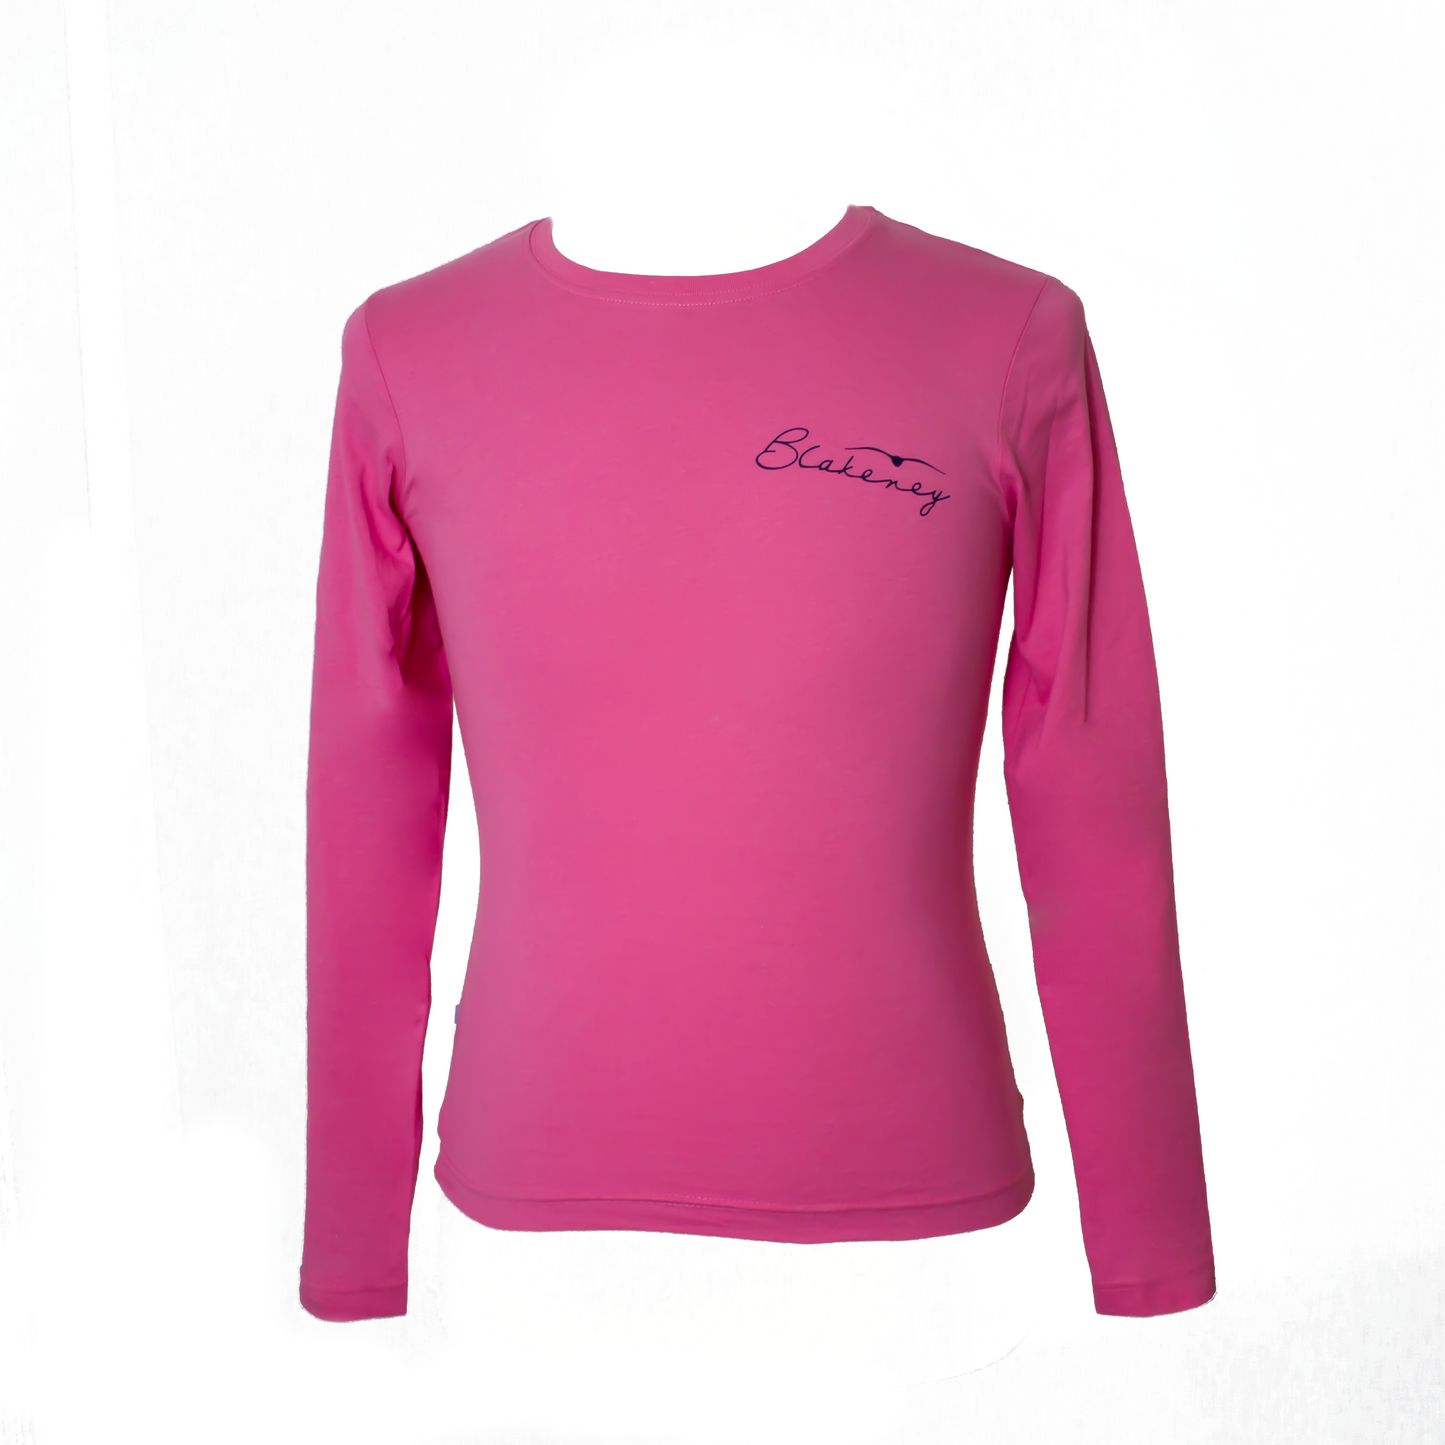 Ladies Pink Blakeney Bird Long Sleeved T-shirt